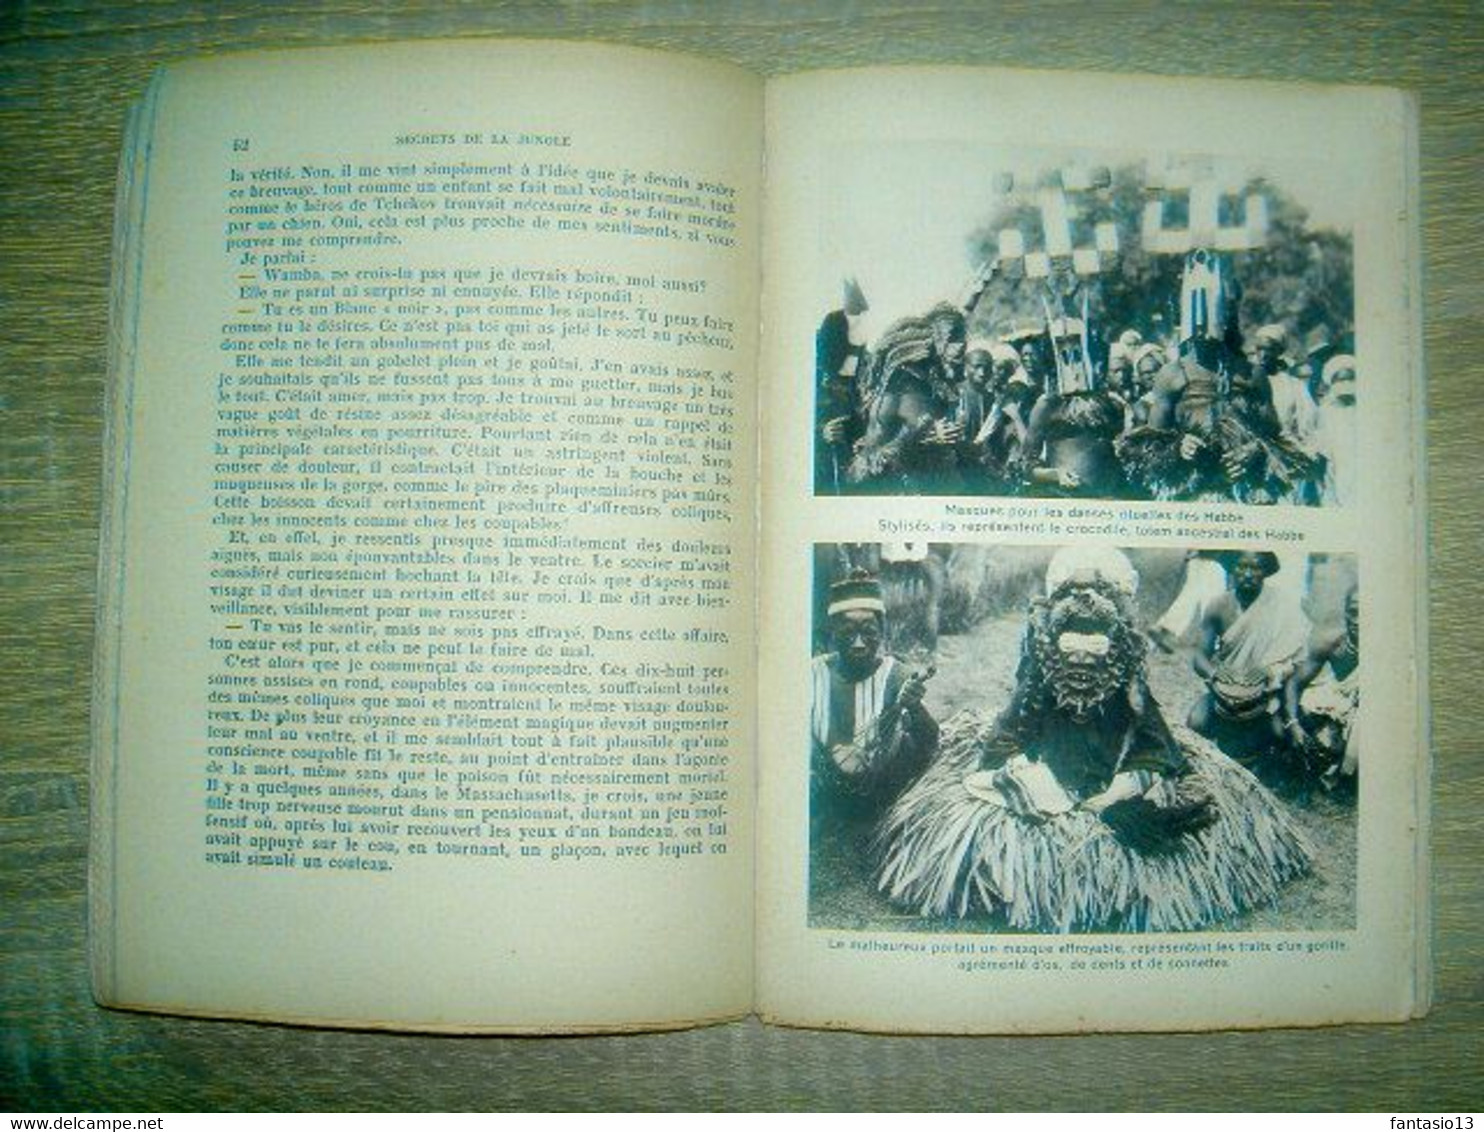 Secrets de la Jungle   W.-B. Seabrook  - Voyage Afrique an.30